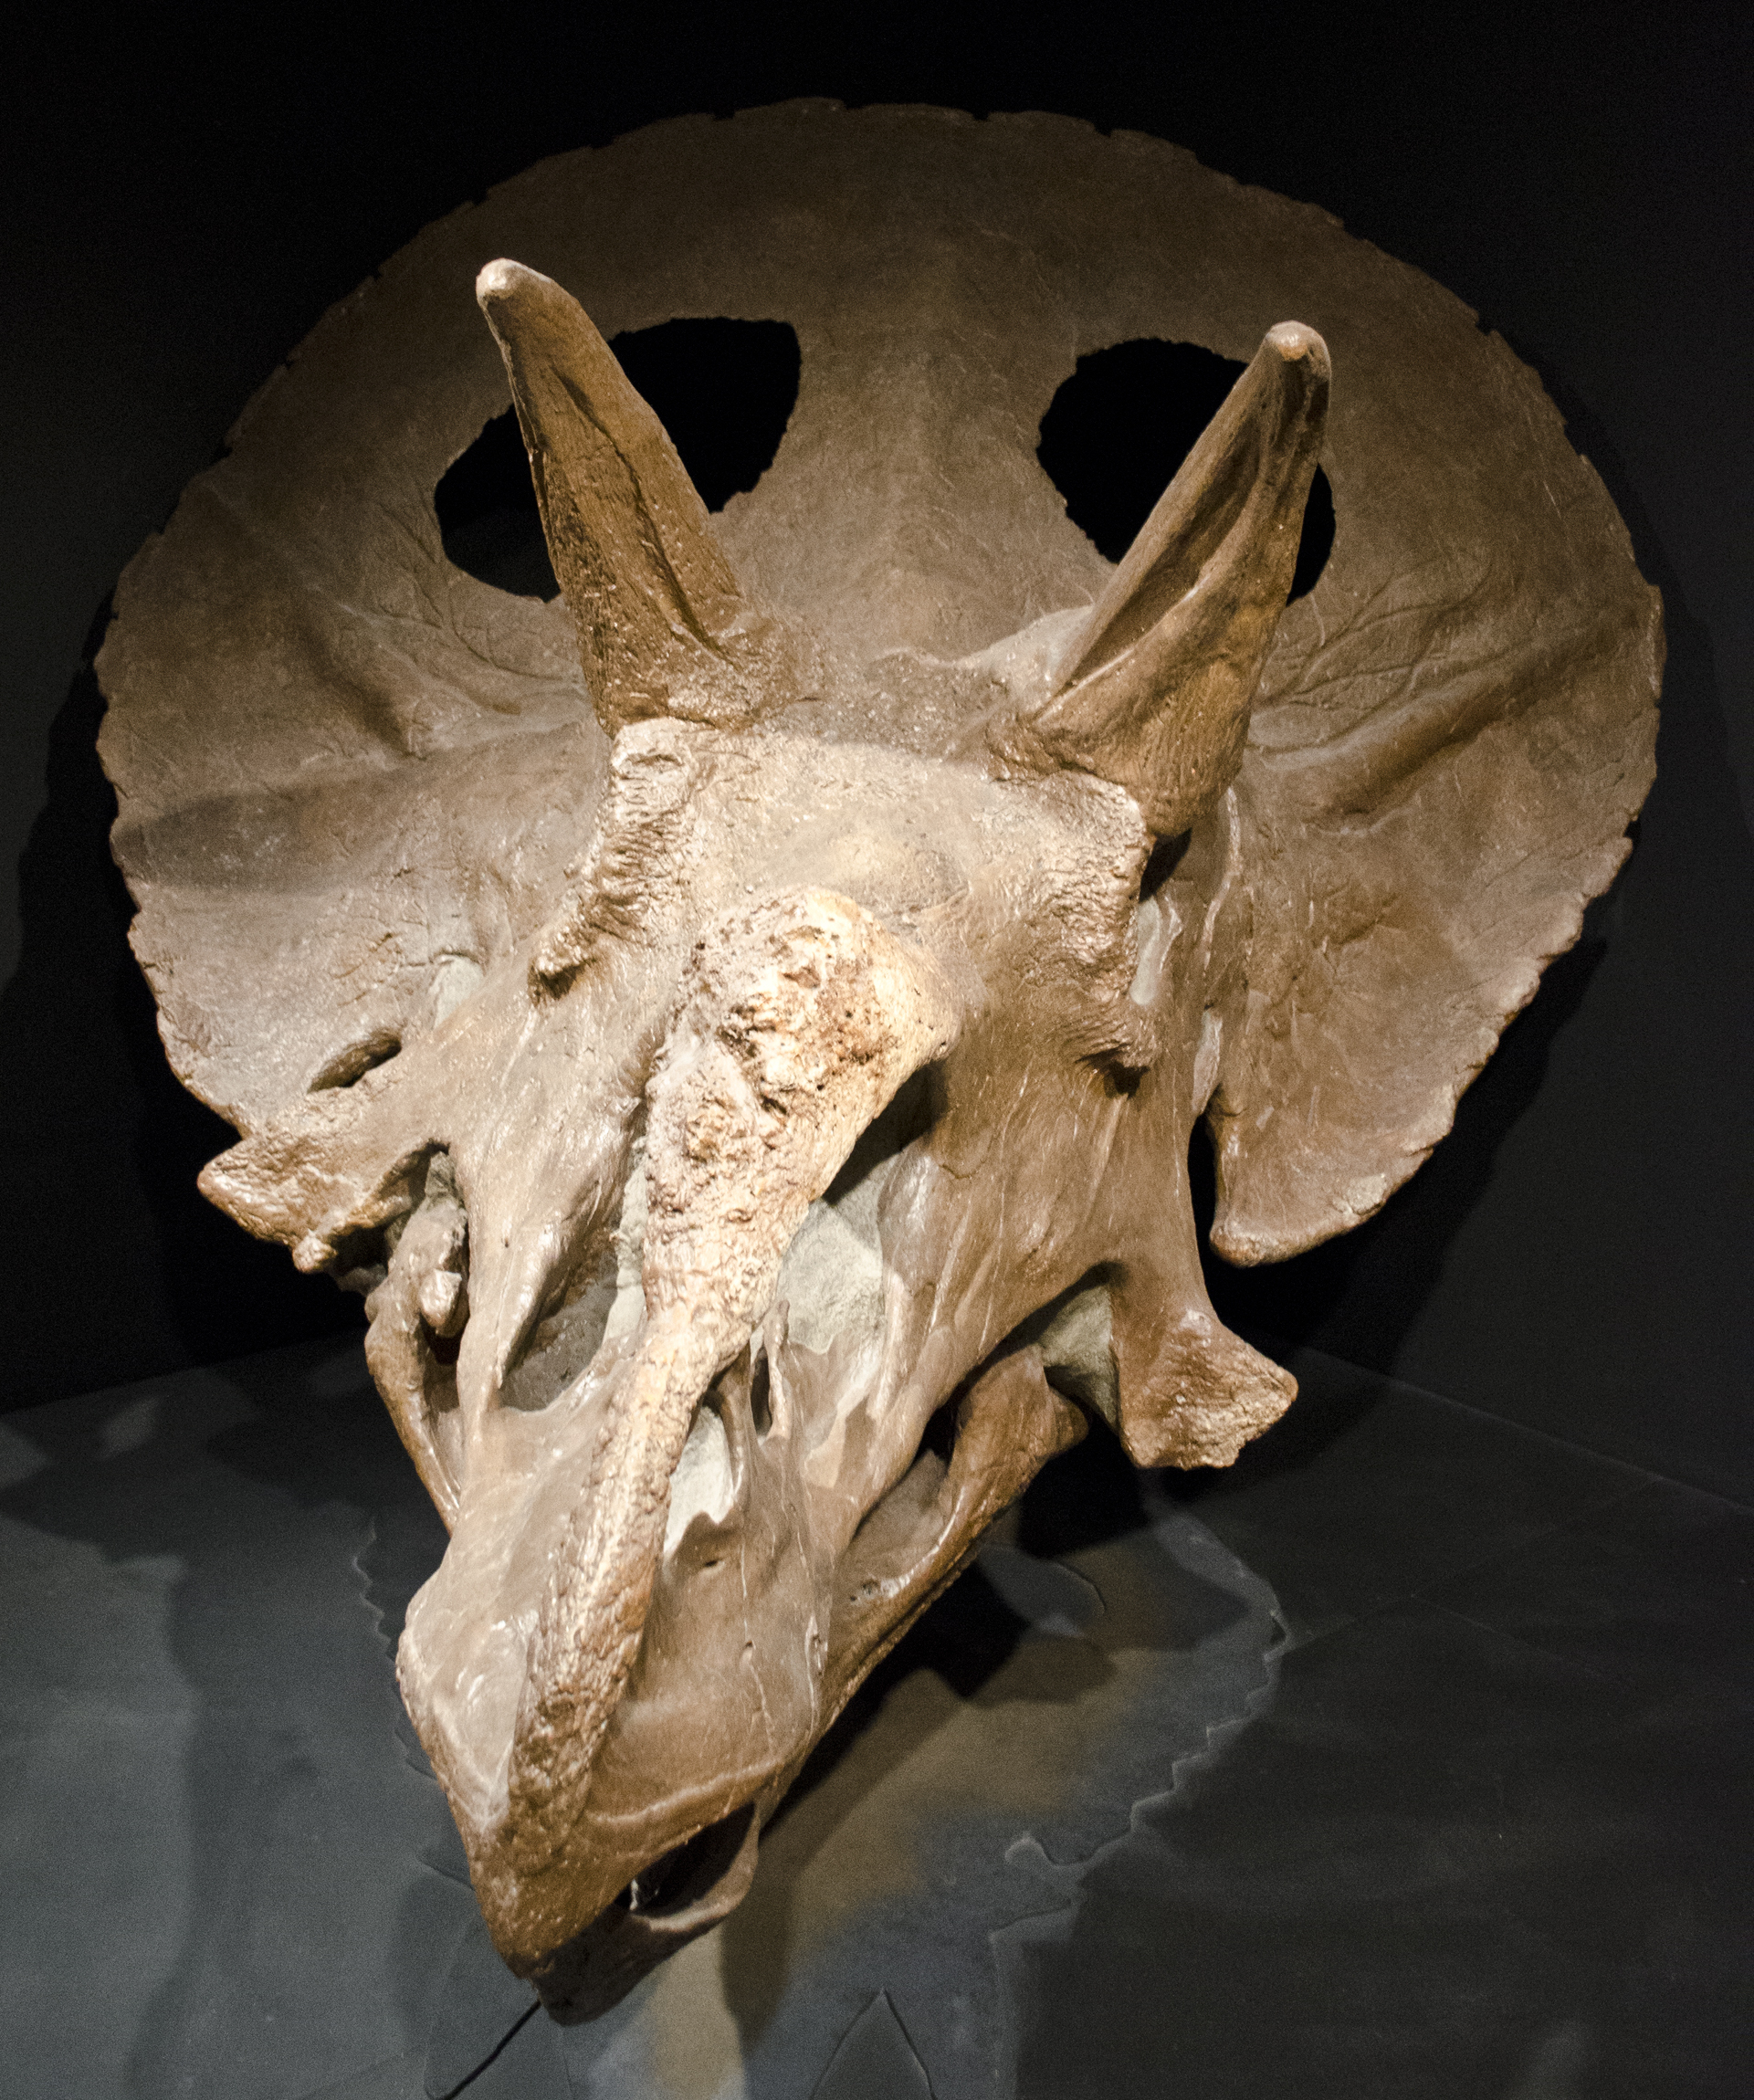 Exemplář MOR 1122, rovněž z expozice Museum of the Rockies v Bozemanu. S celkovou délkou kolem 252 cm patřila tato lebka spíše k průměrně (či lehce nadprůměrně) velkým. Kredit: Tim Evanson, Wikipedie (CC BY-SA 2.0)